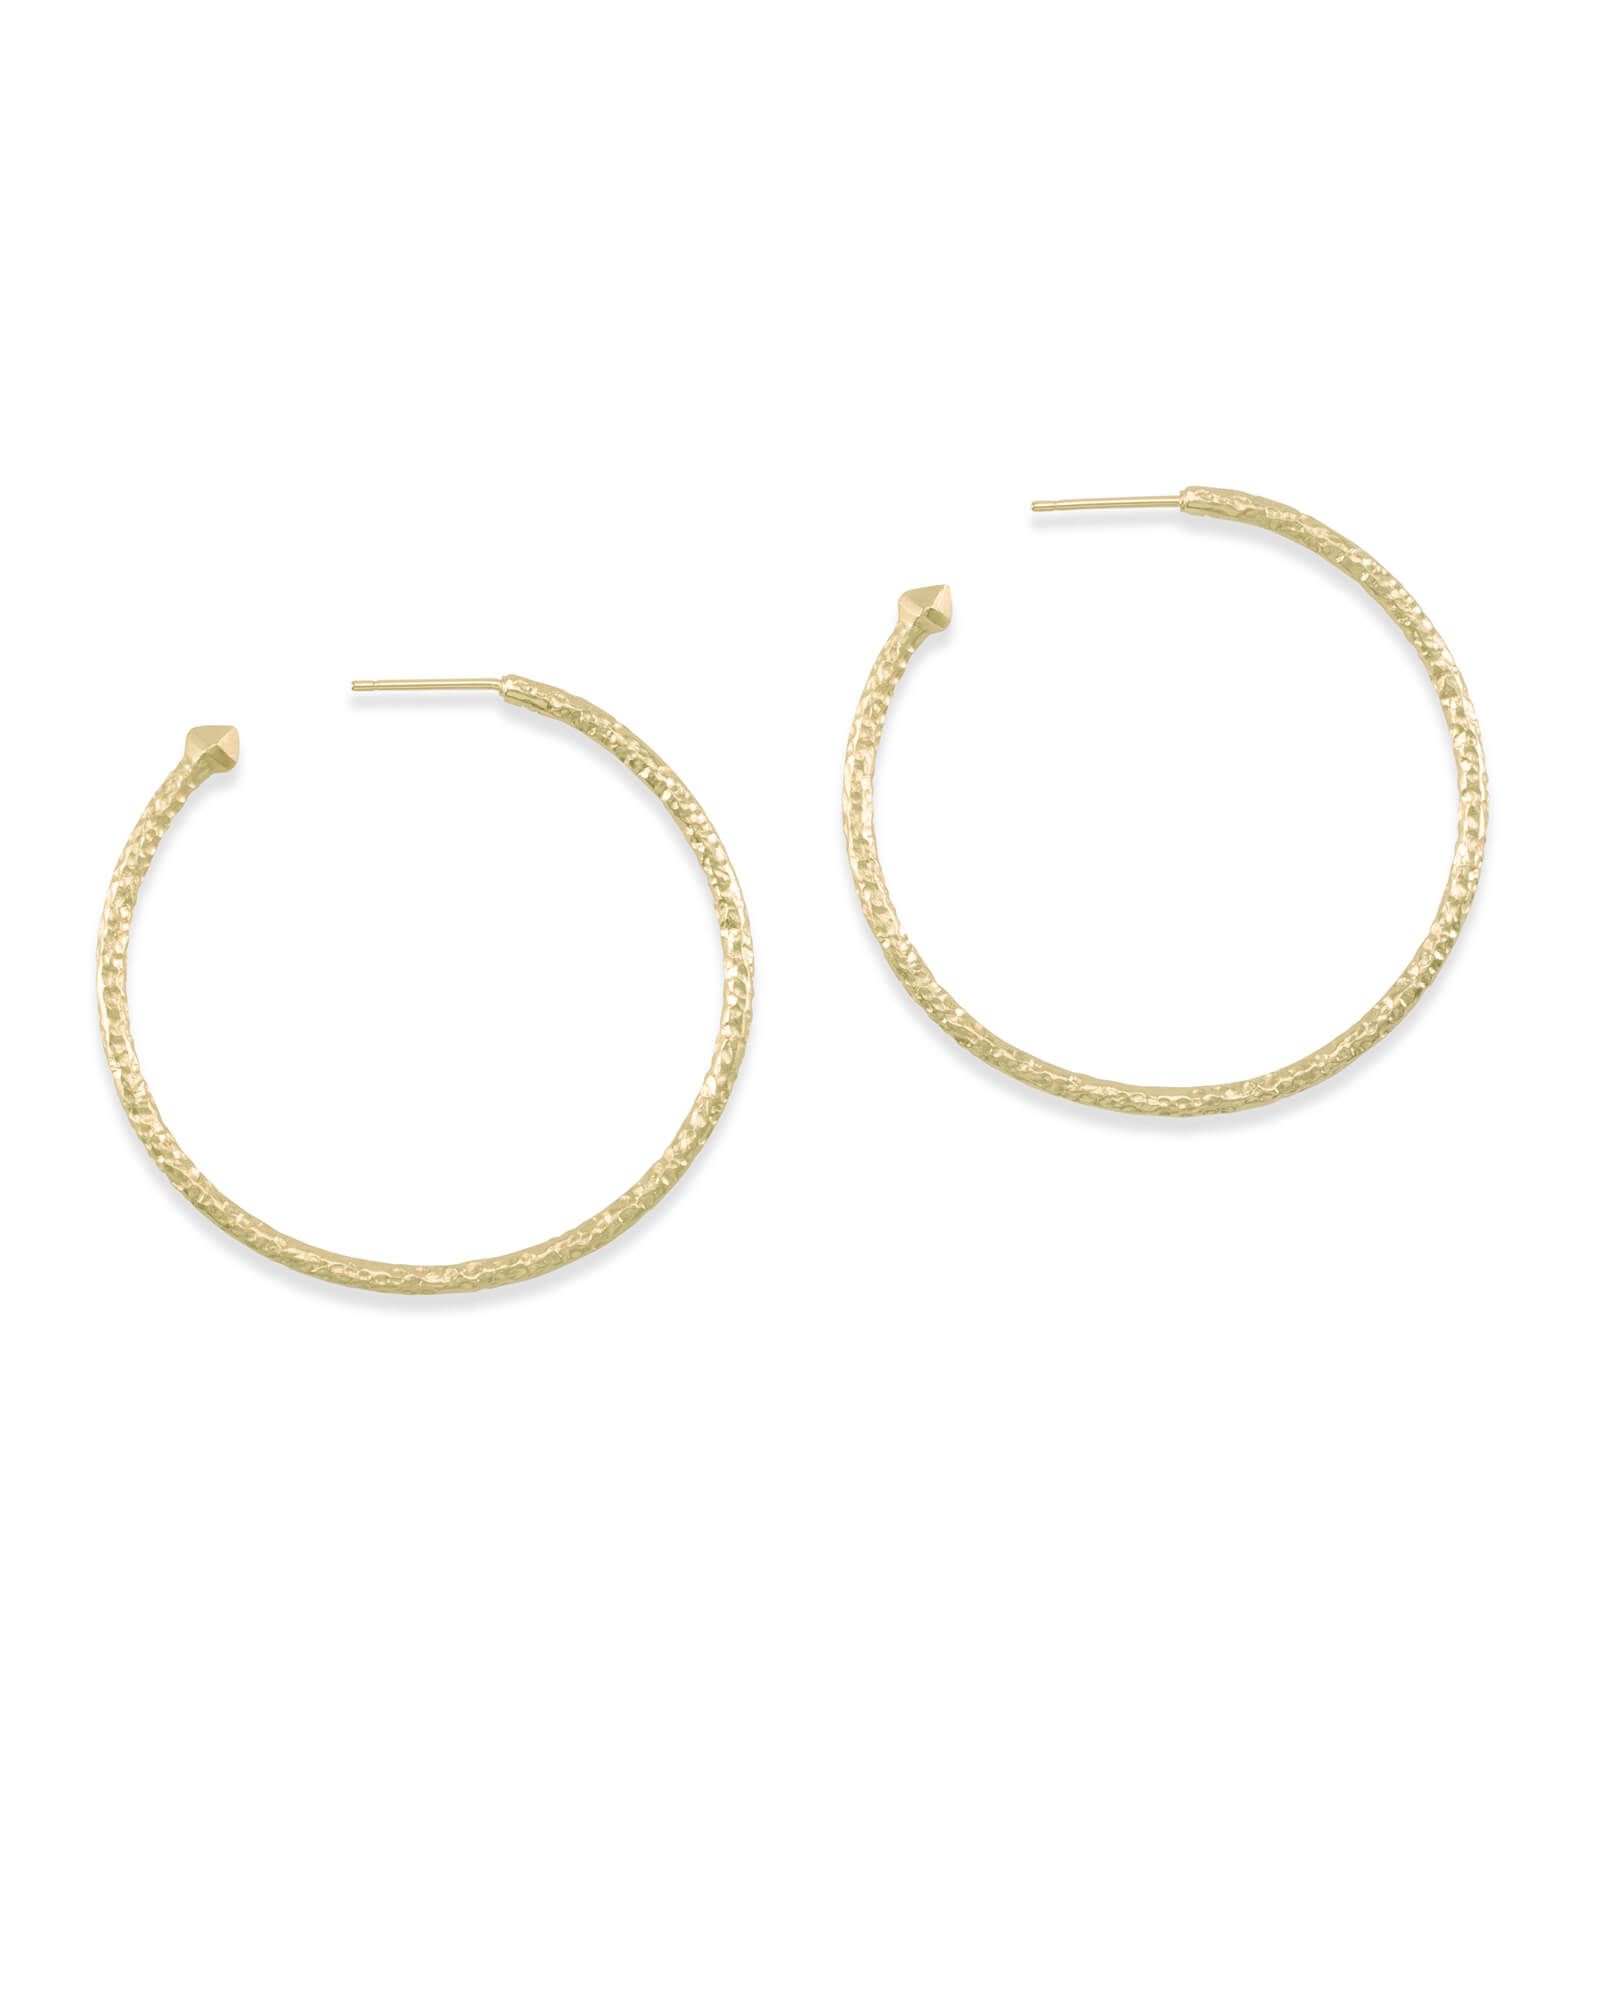 Hammered Hoop Earrings in Gold | Kendra Scott